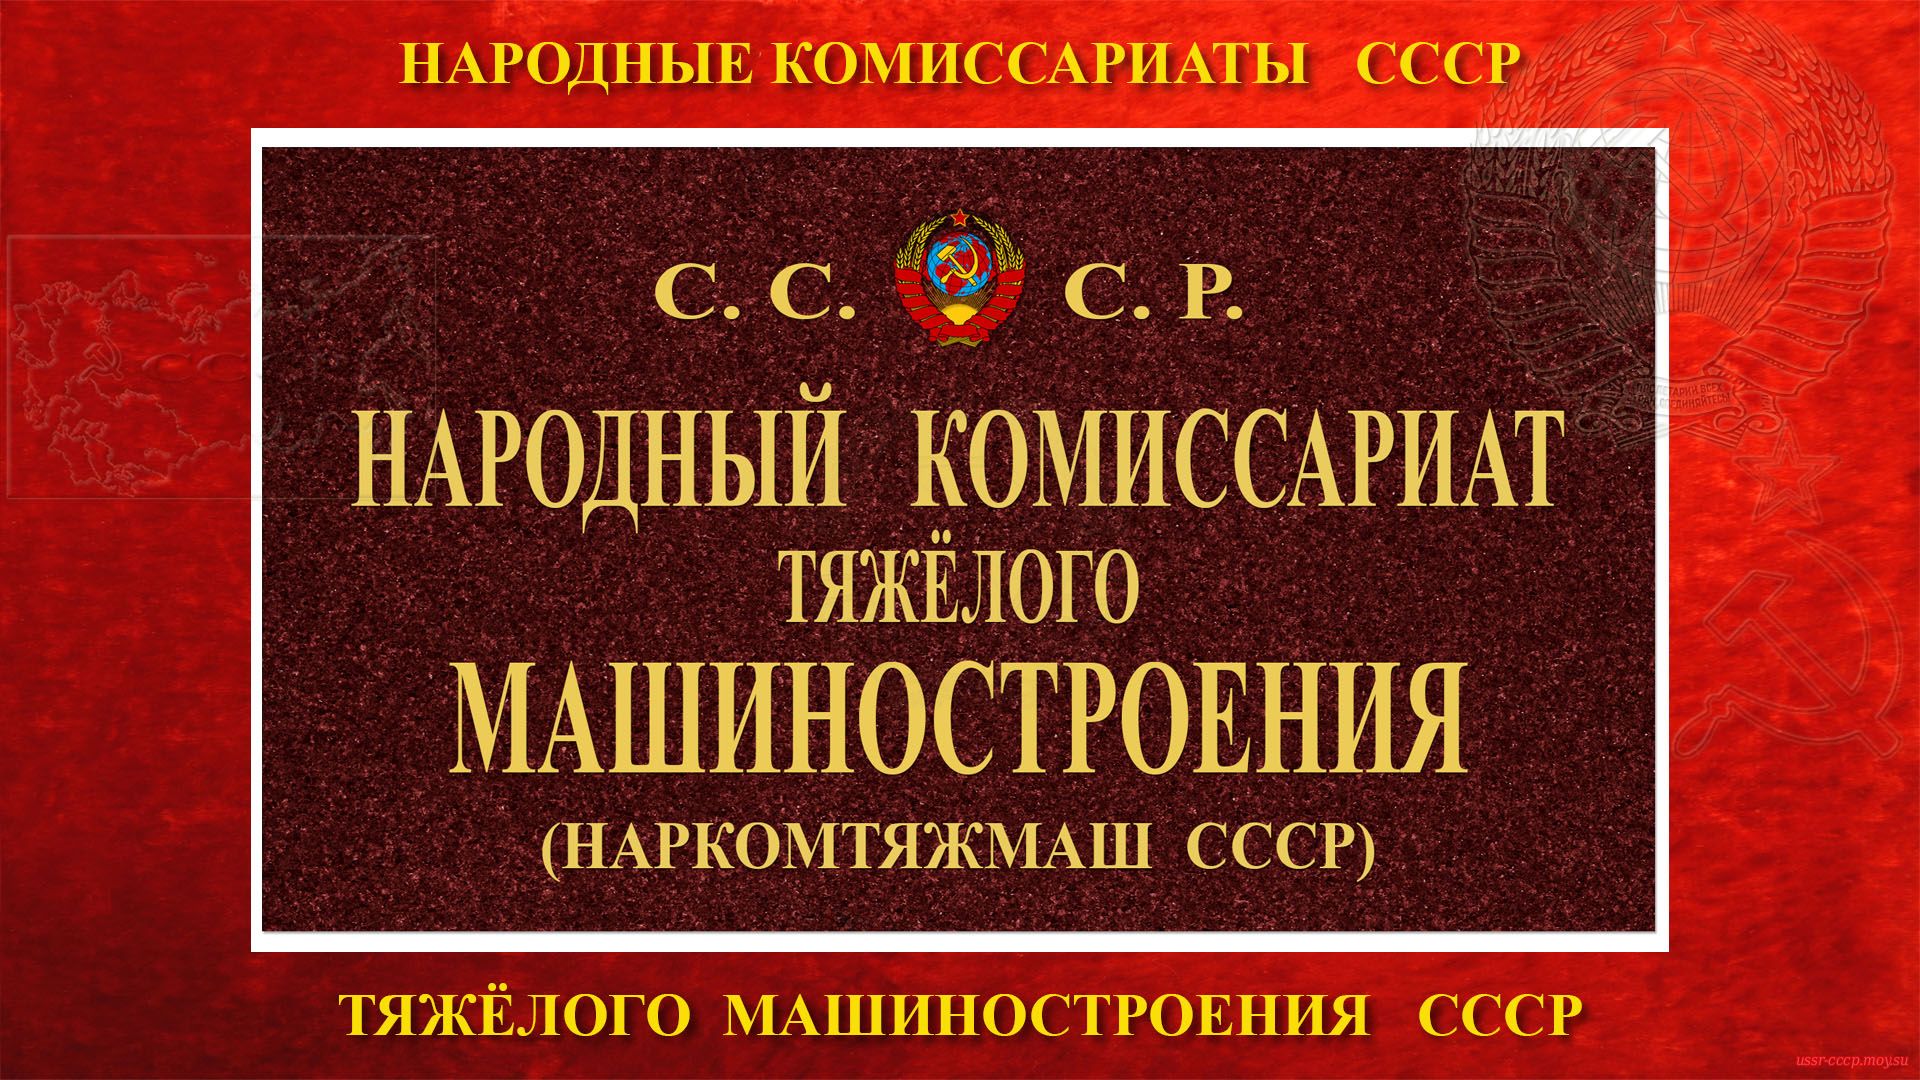 НАРКОМТЯЖМАШ СССР — Народный комиссариат тяжёлого машиностроения СССР